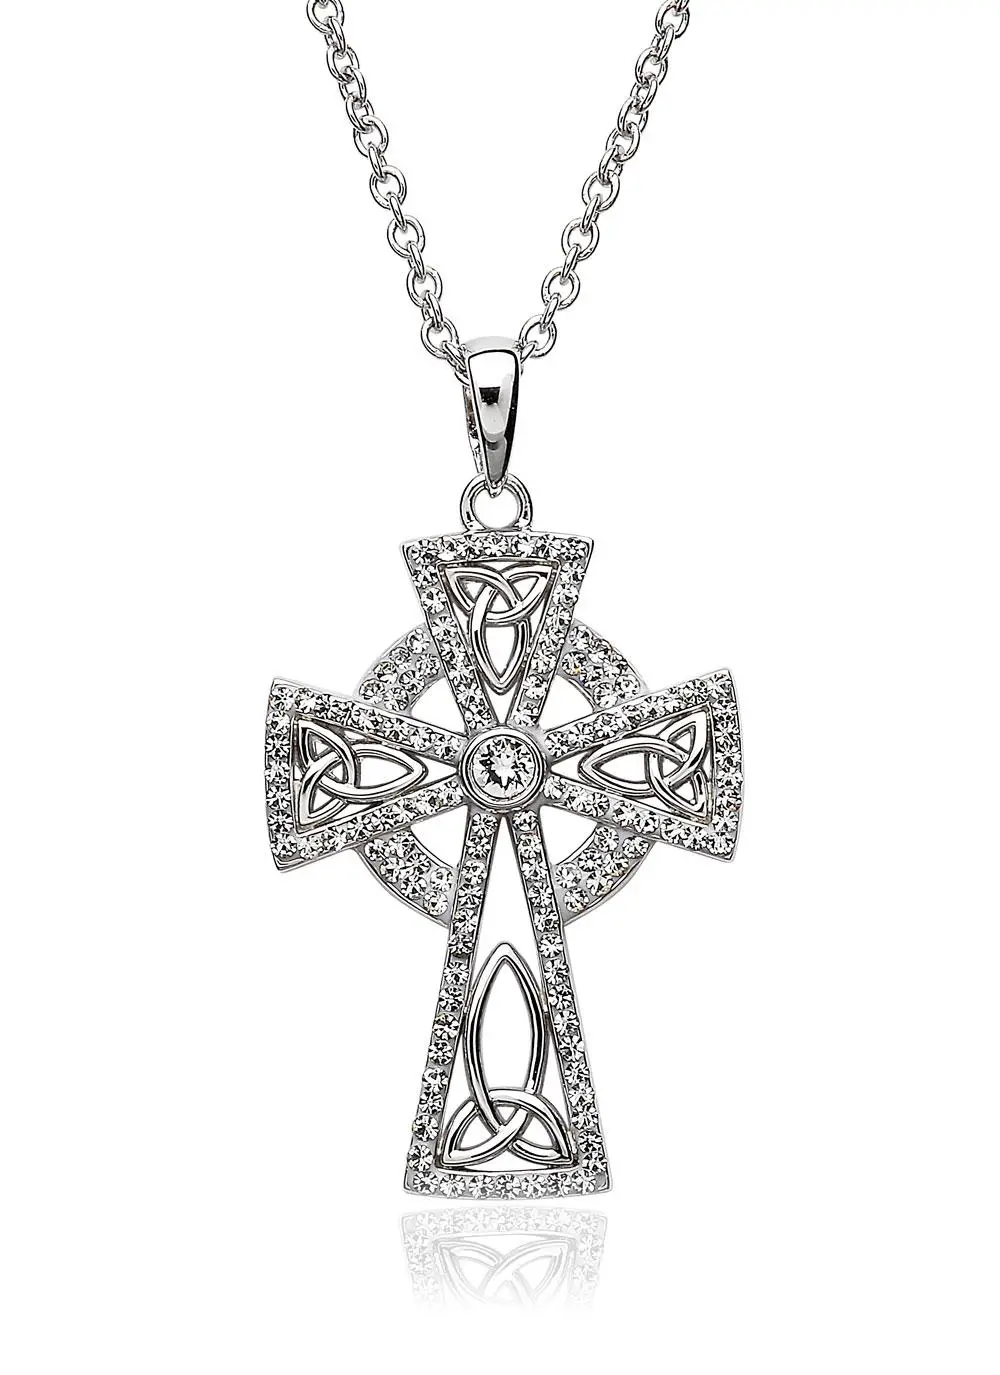 Celtic Cross Pendant Embellished With Swarovski Crystals | Blarney